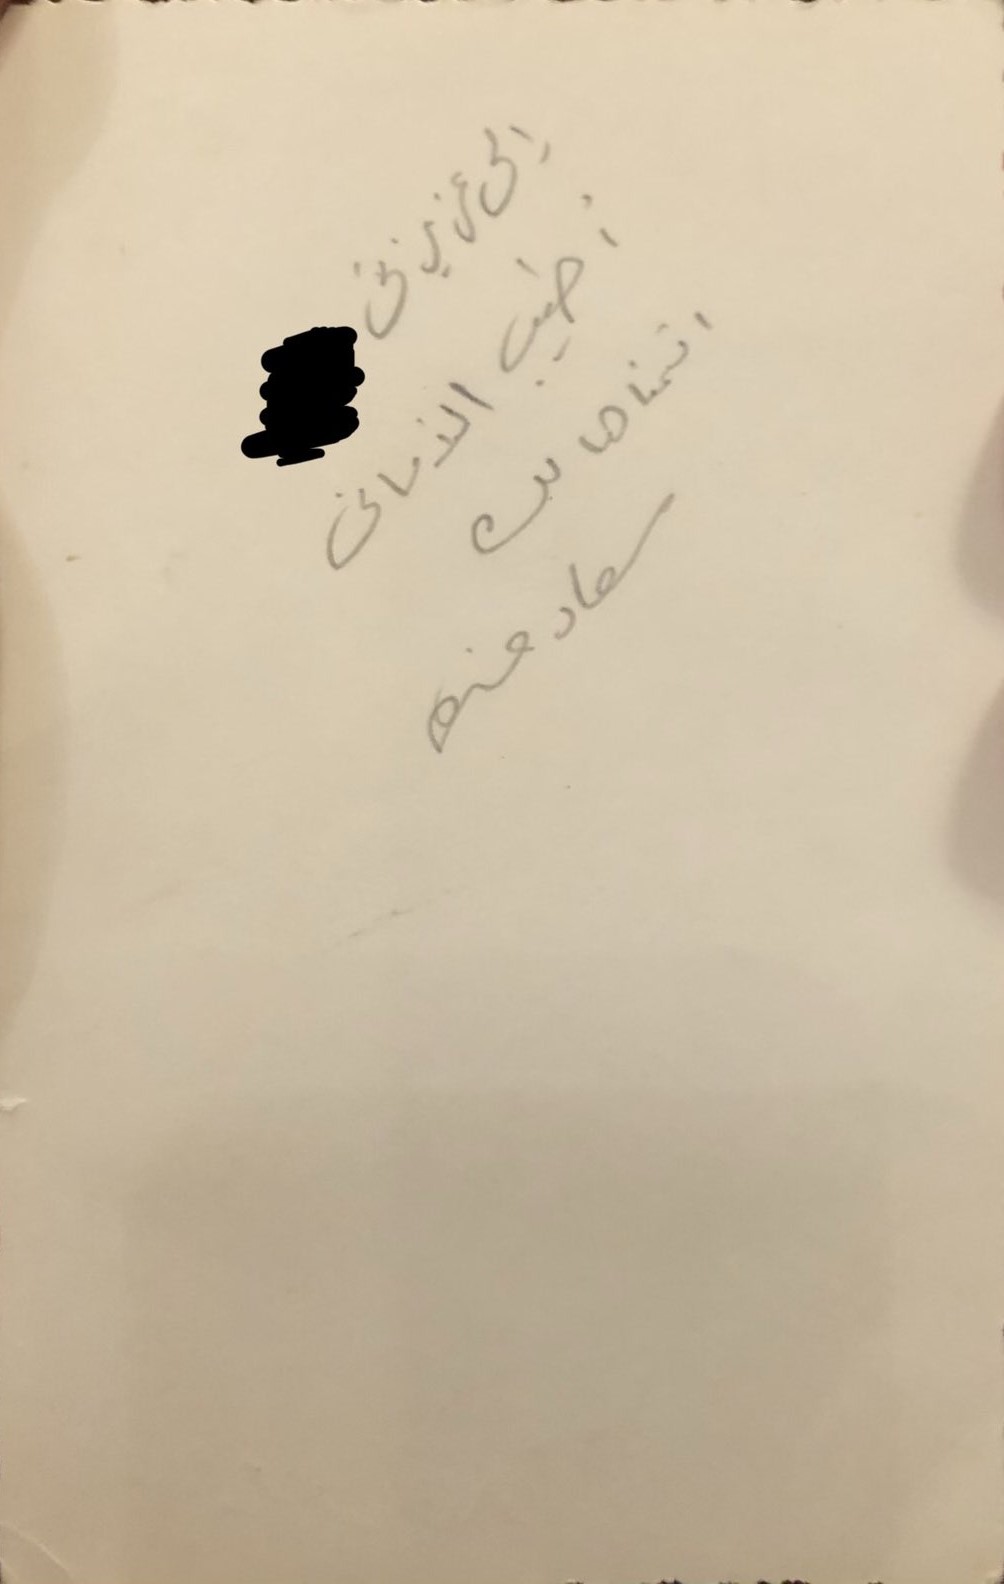 وثيقة مكتوبة : اهداء سعاد حسني لمعجبة كويتية 1975 م 2400